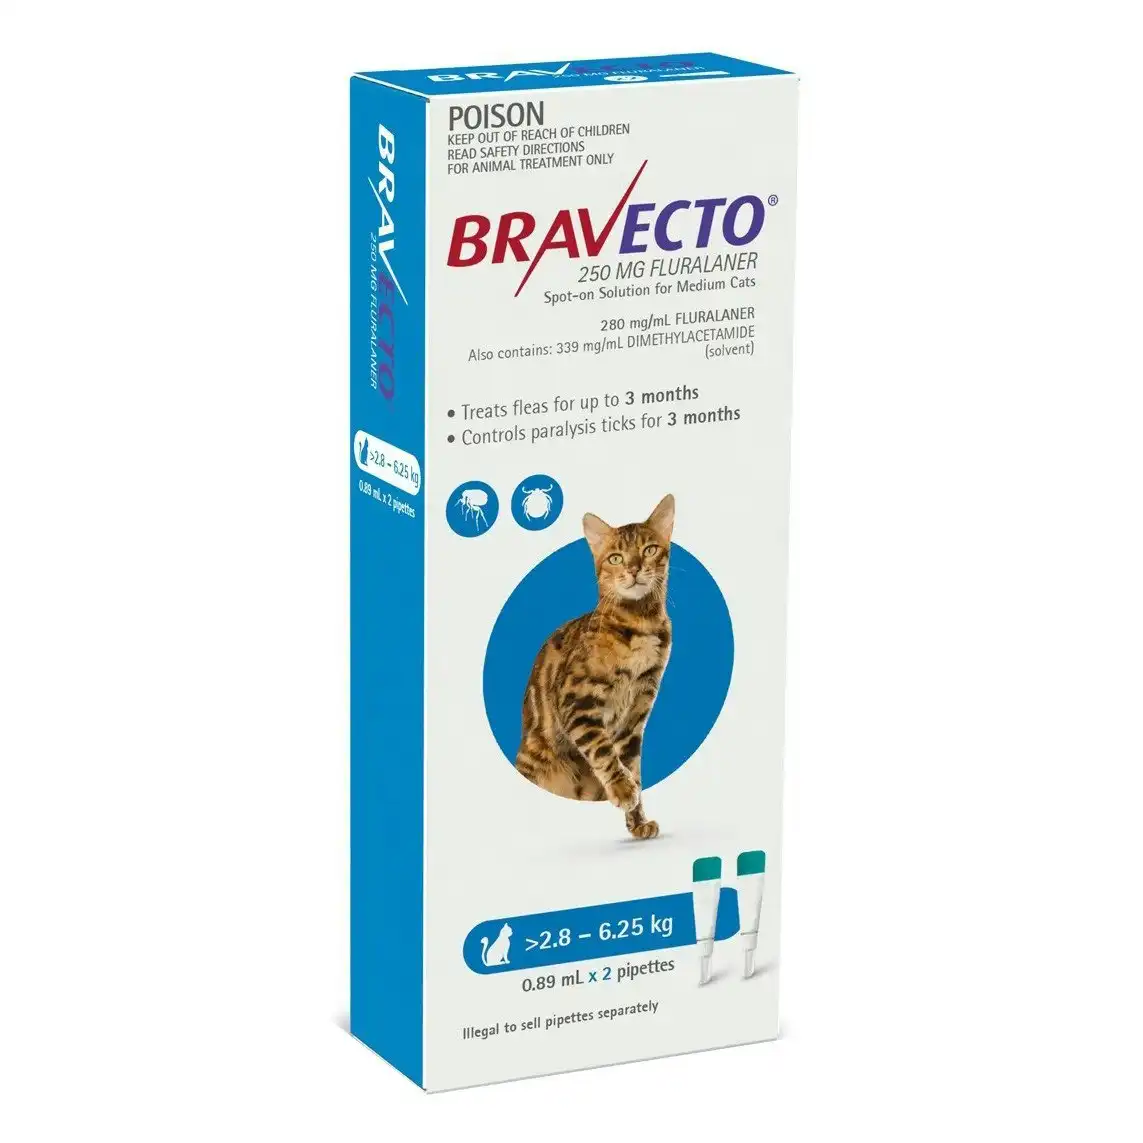 Bravecto For Cats 2.8kg - 6.25kg 2 Pipettes